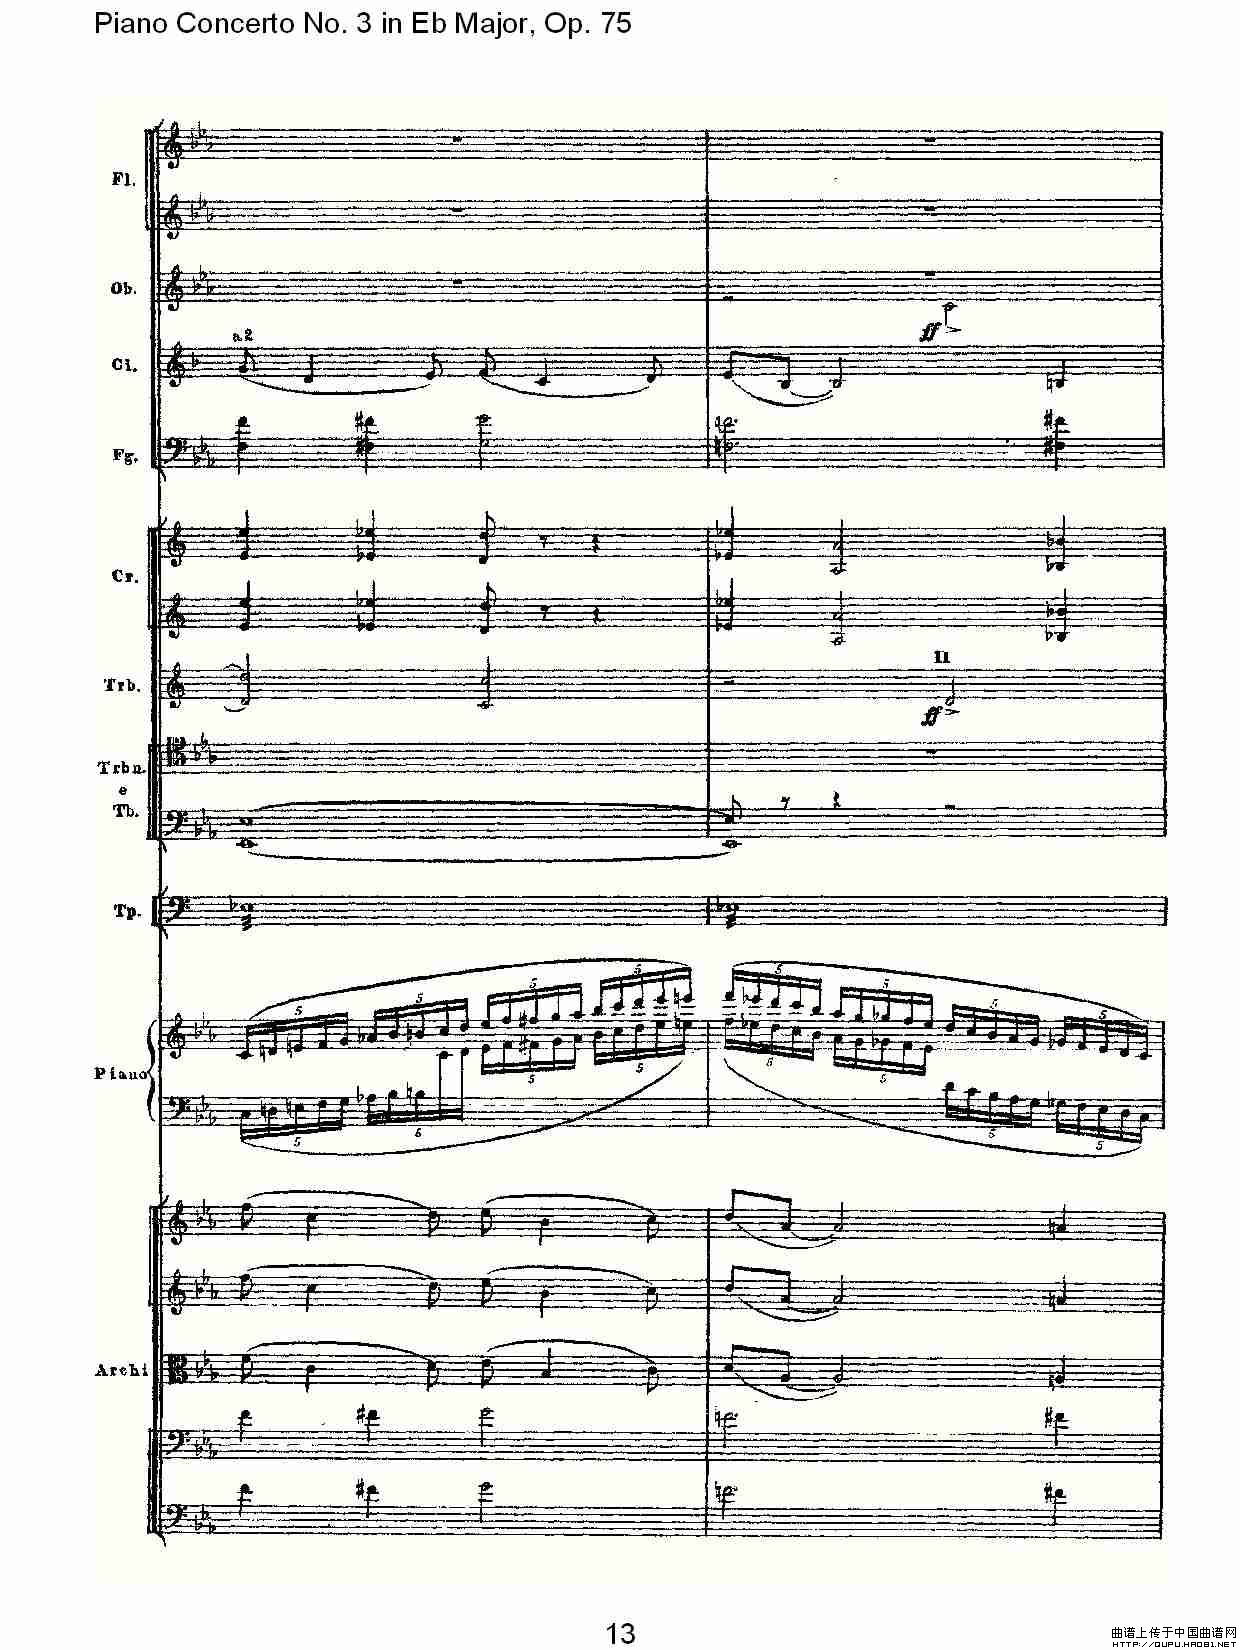 Piano Concerto No.3 in Eb Major,Op.75（Eb大调第三钢琴协奏曲）(1)_原文件名：Piano Concerto No.3 in Eb Major,Op.7513.jpg